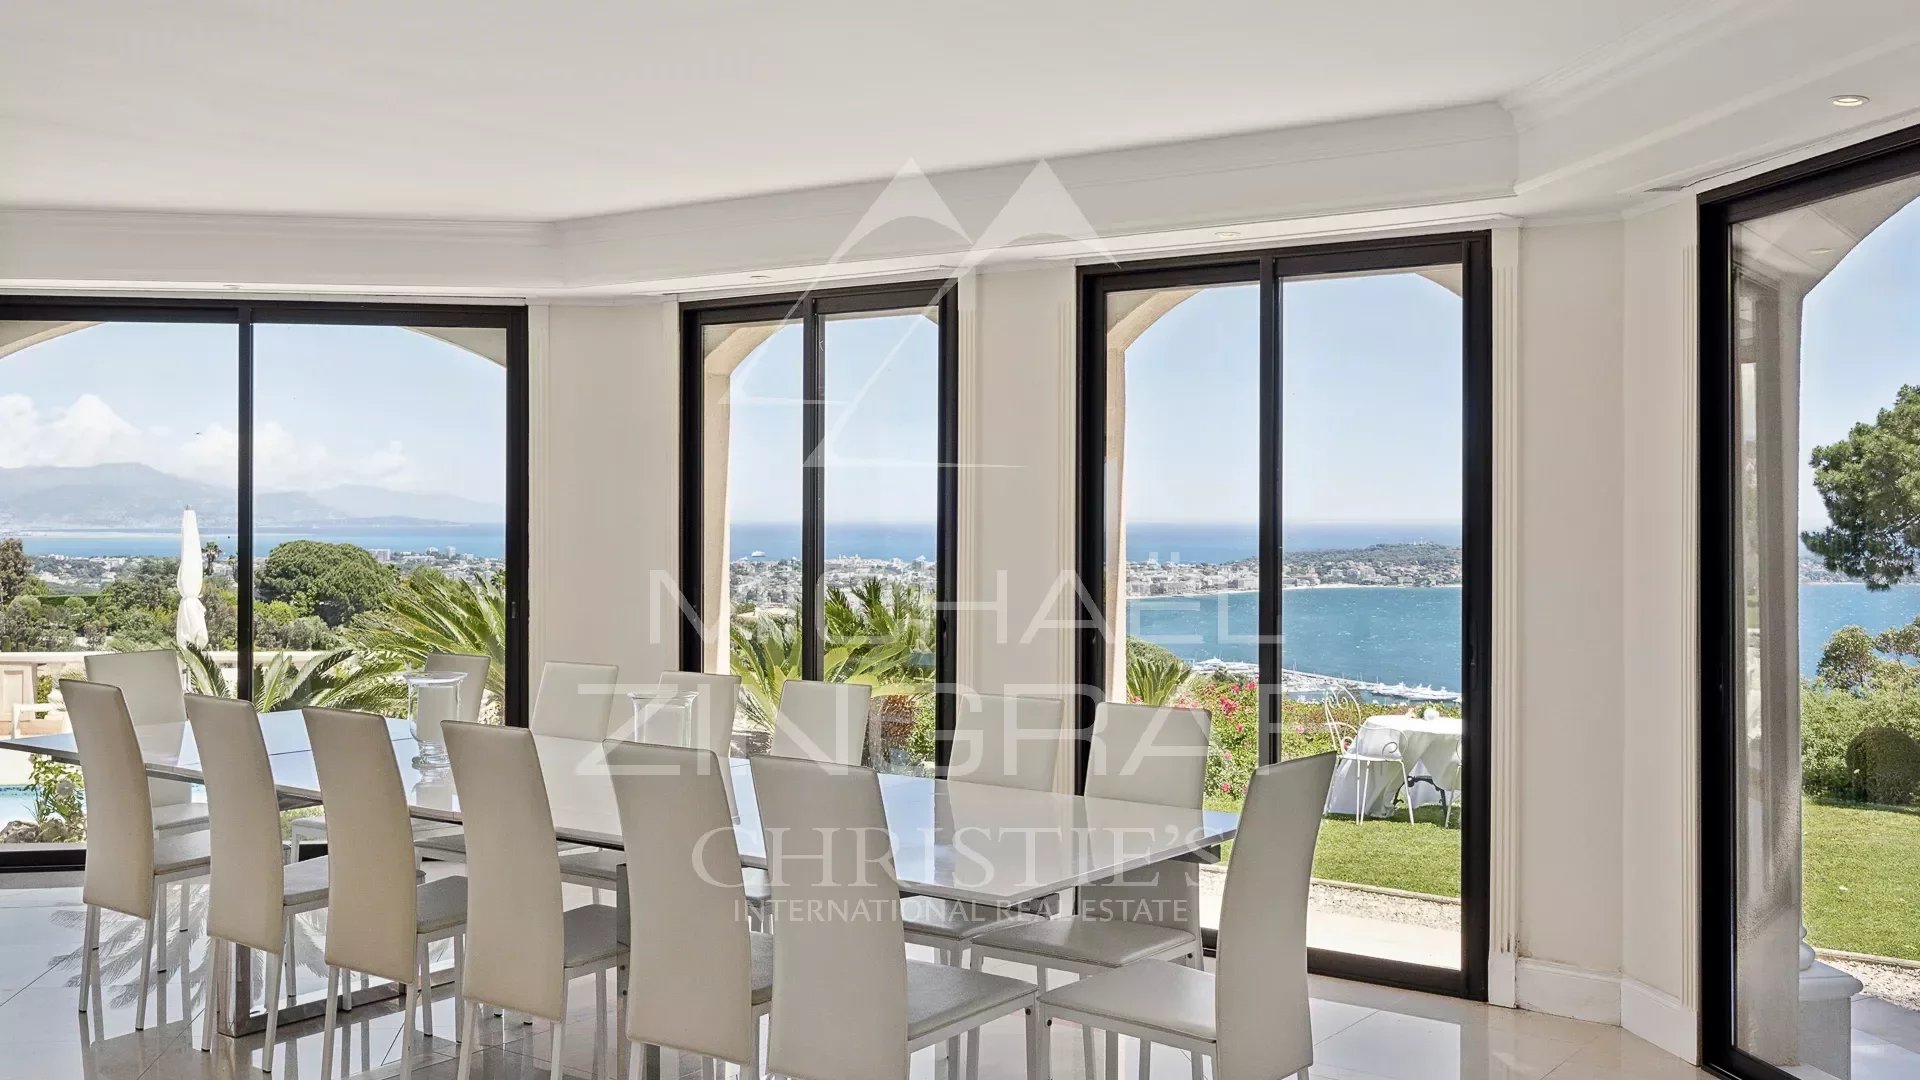 Super Cannes - Vue panoramique mer - Superbe propriété de charme